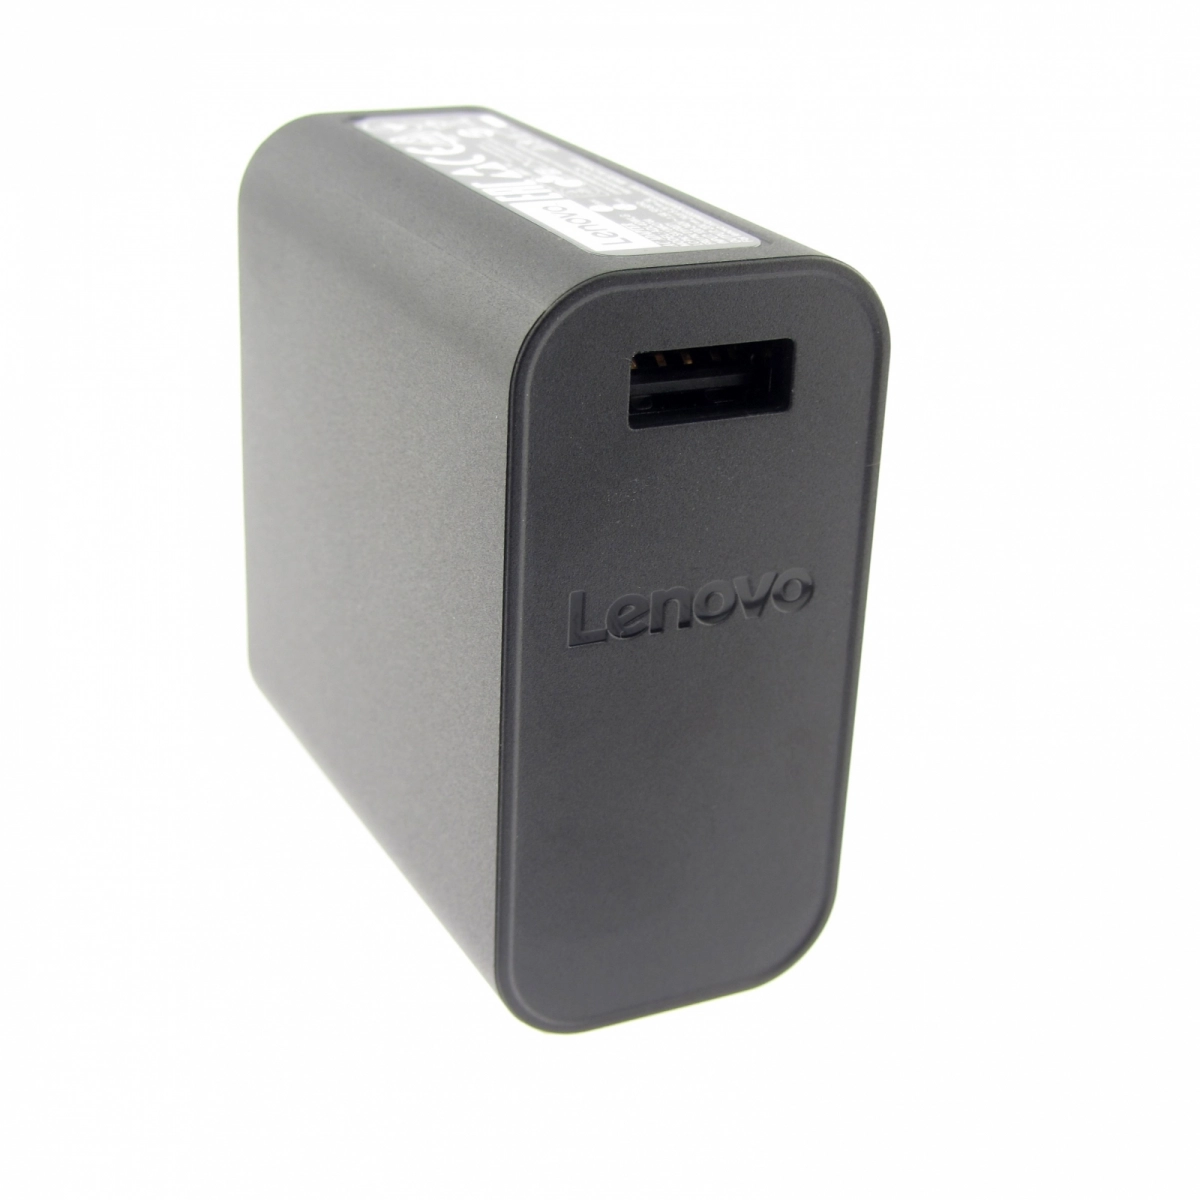 Original Netzteil für LENOVO ADL40WDH 36200616, 20V, 2A, Stecker USB, ohne USB-Kabel